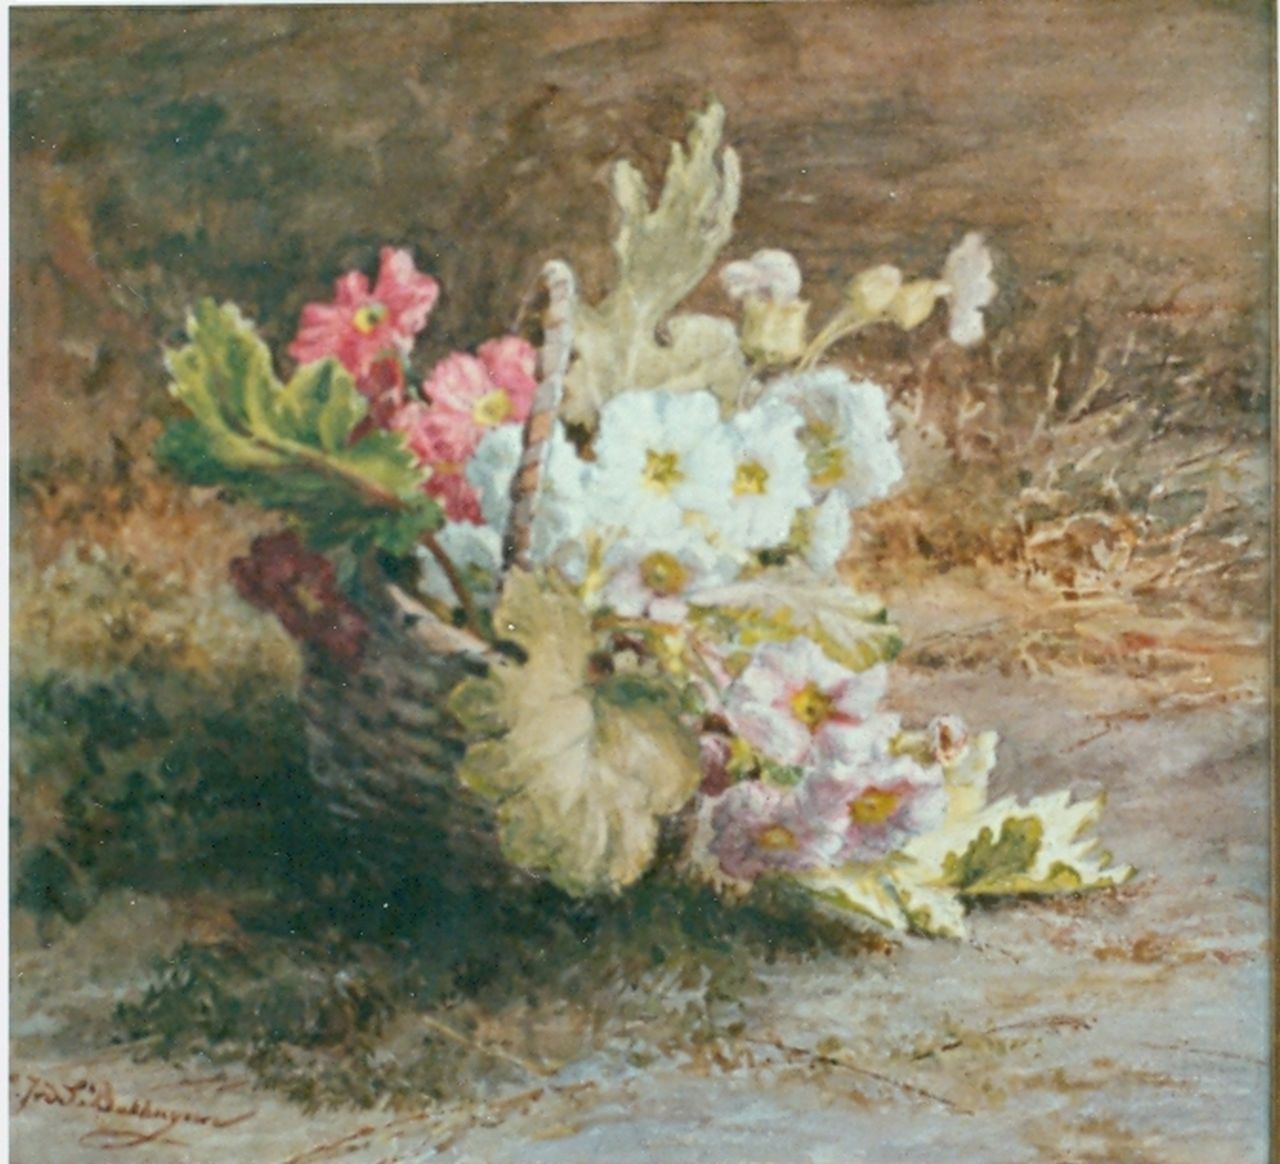 Sande Bakhuyzen G.J. van de | 'Gerardine' Jacoba van de Sande Bakhuyzen, Primula's in een mandje, aquarel op papier 44,5 x 37,3 cm, gesigneerd linksonder